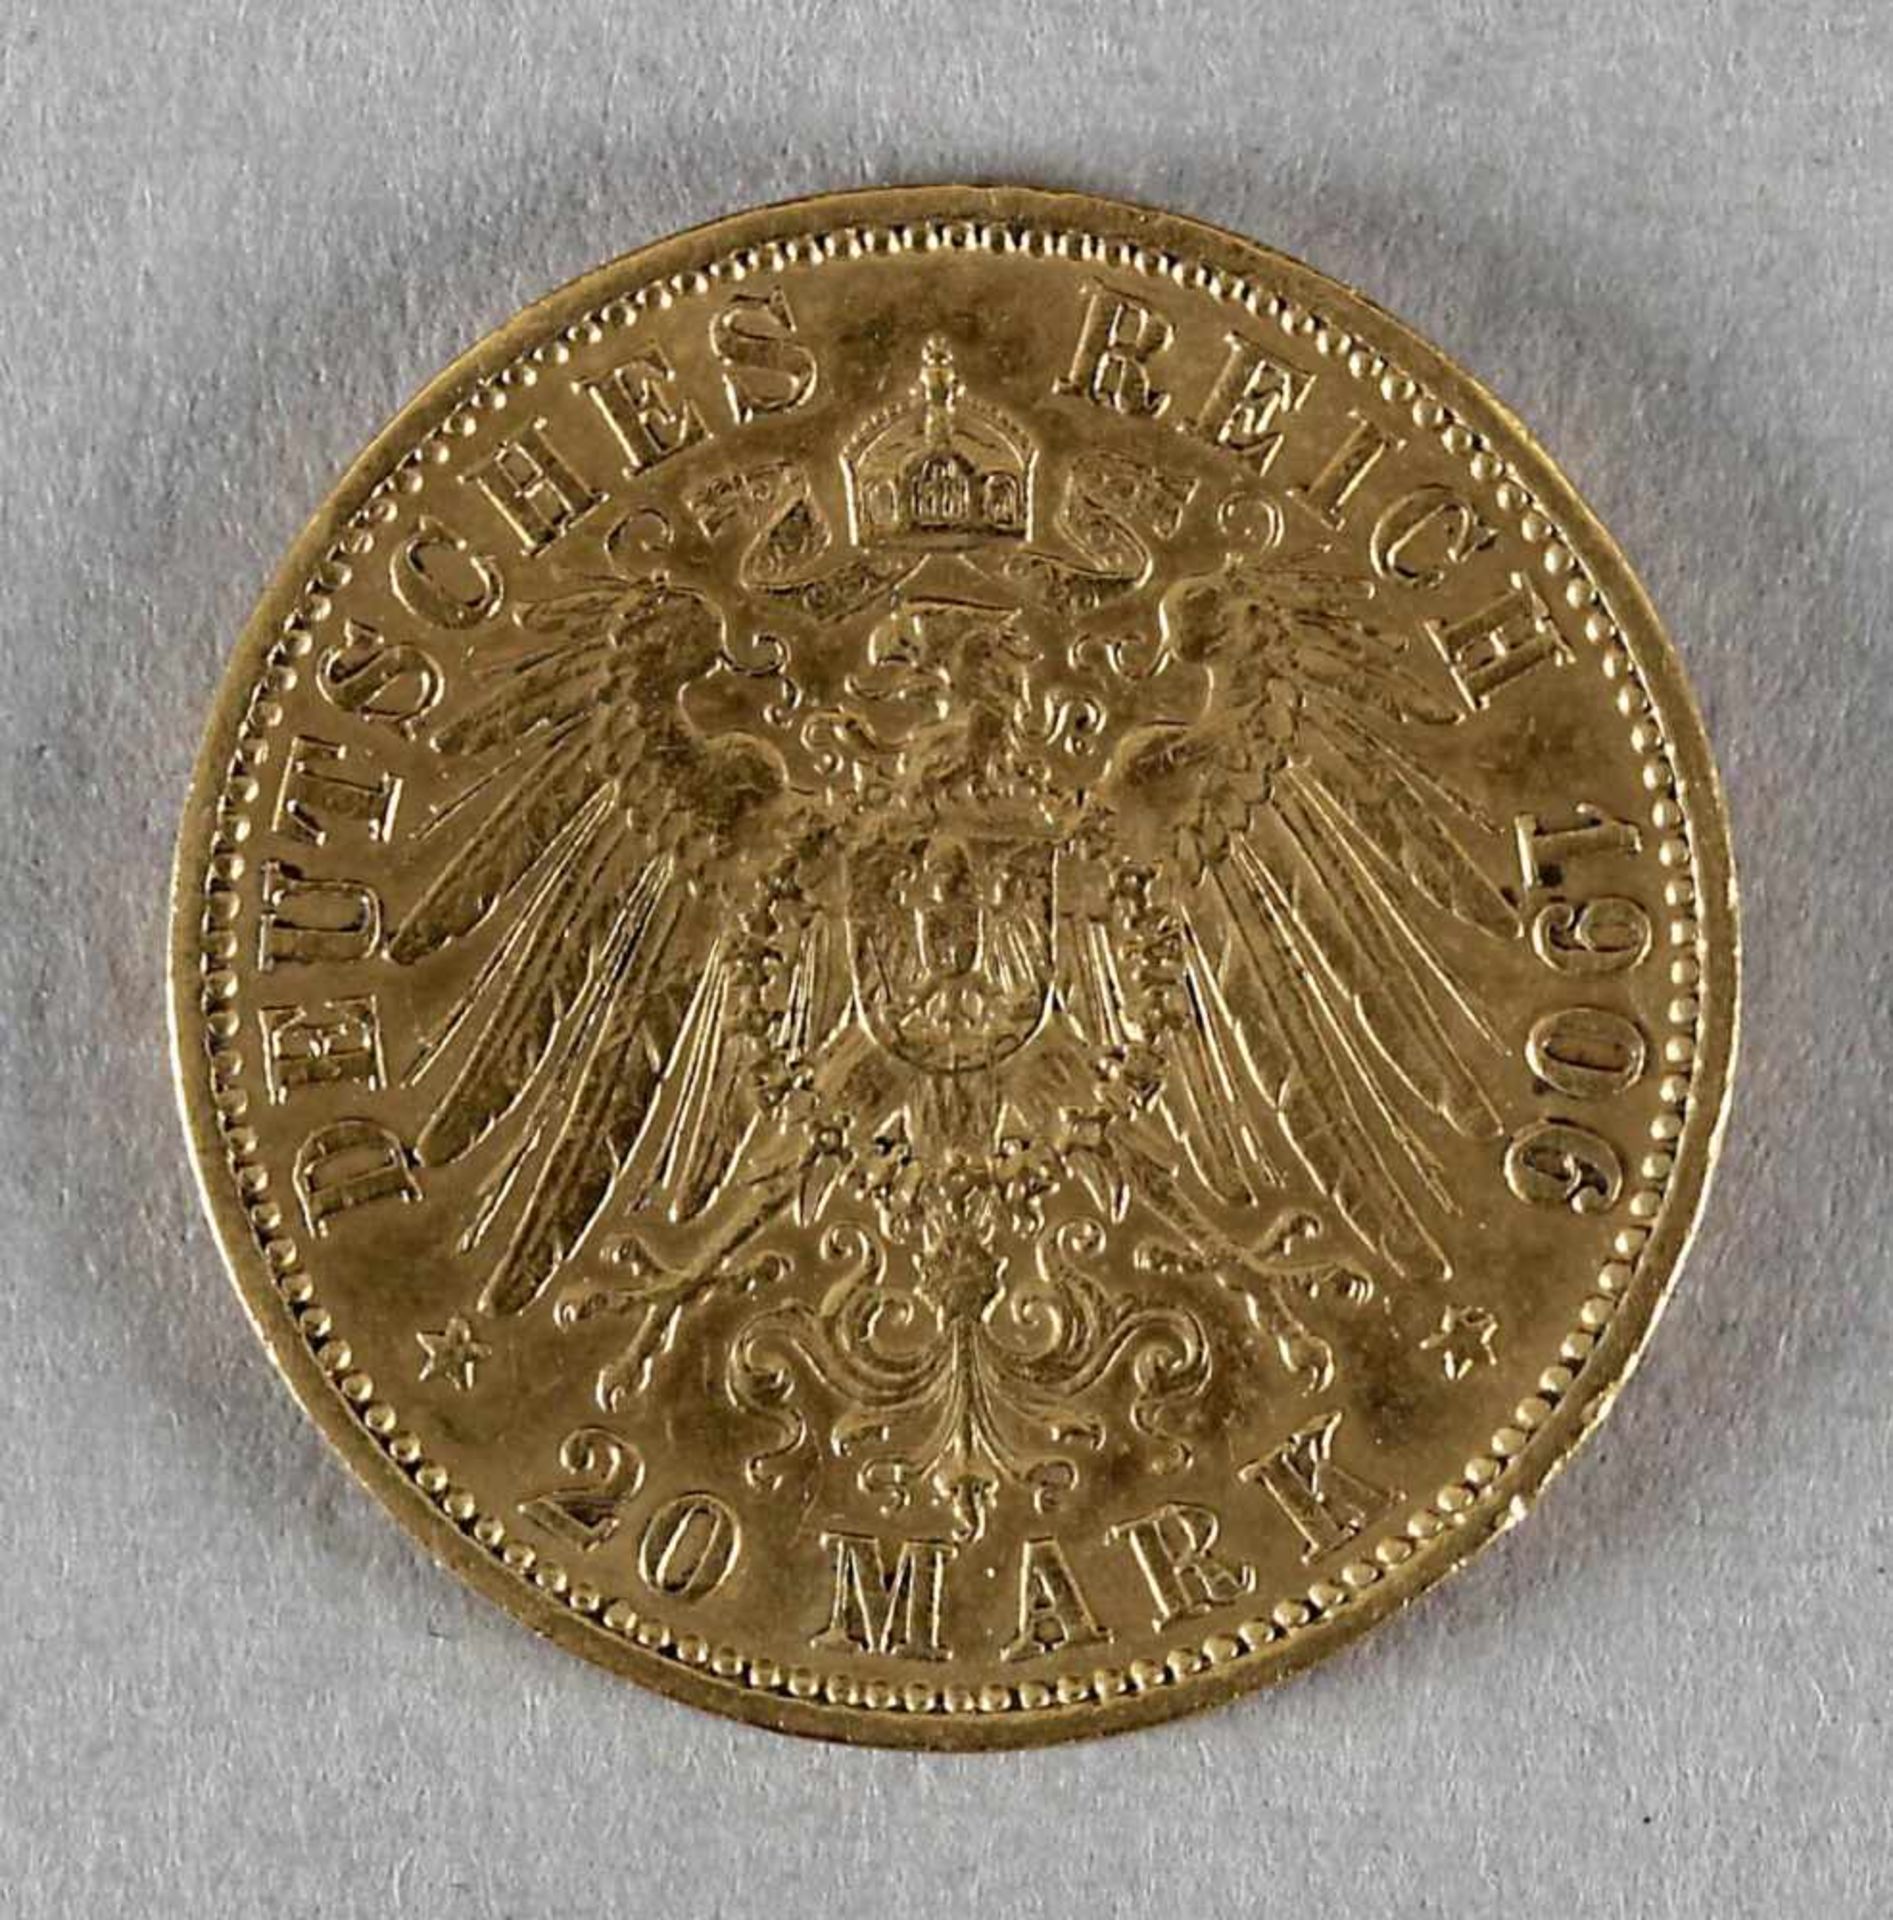 Goldmünze, 20 Mark, Wilhelm II. von Preußen, 1906 A - Bild 2 aus 2